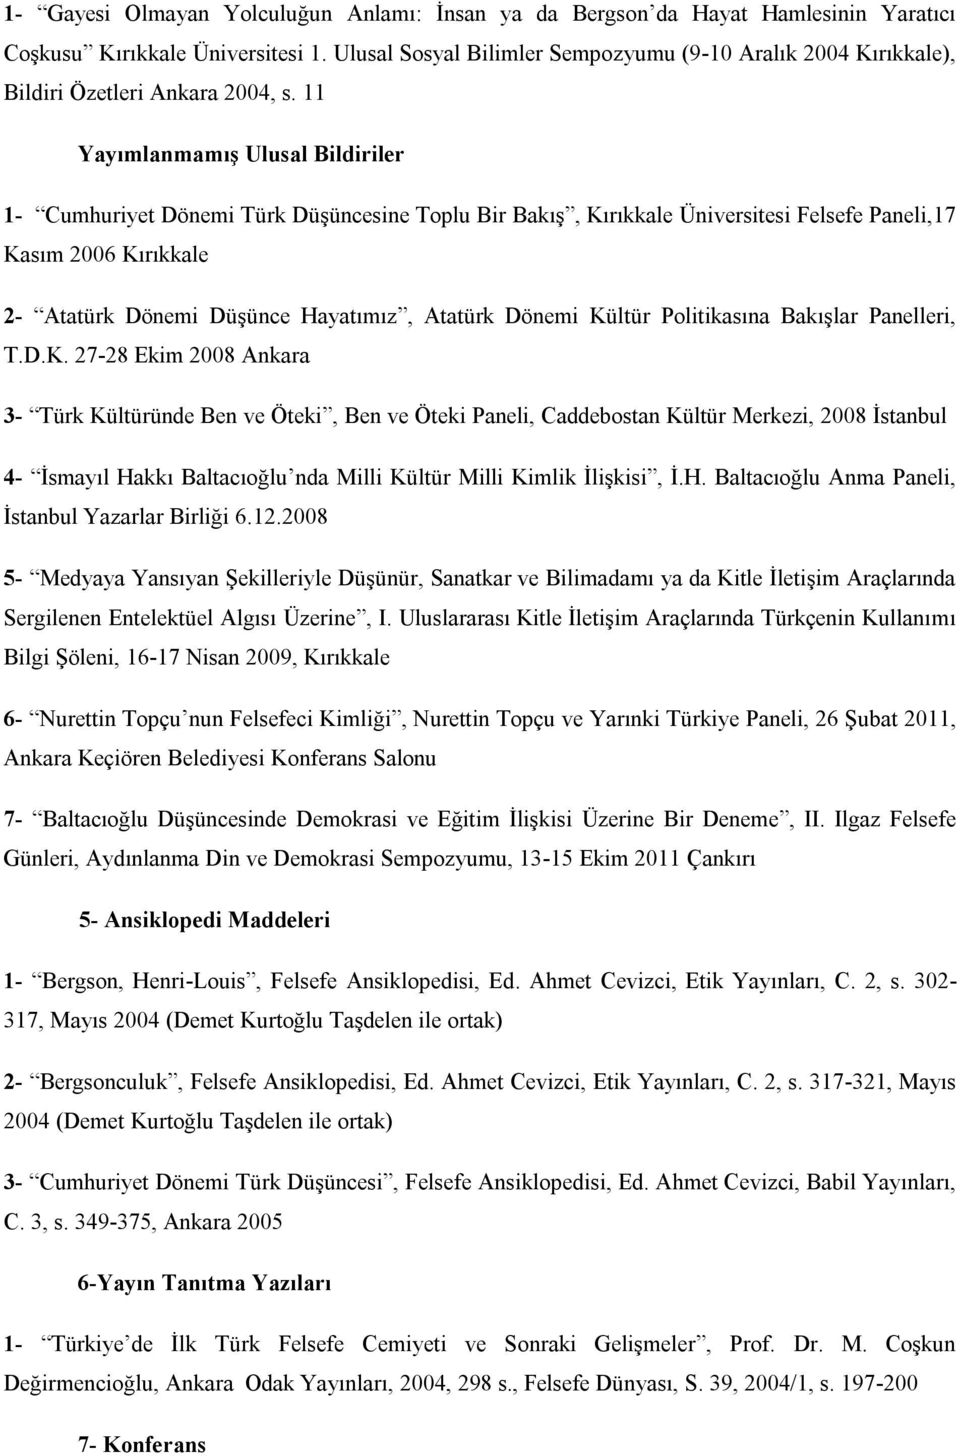 11 Yayımlanmamış Ulusal Bildiriler 1- Cumhuriyet Dönemi Türk Düşüncesine Toplu Bir Bakış, Kırıkkale Üniversitesi Felsefe Paneli,17 Kasım 2006 Kırıkkale 2- Atatürk Dönemi Düşünce Hayatımız, Atatürk